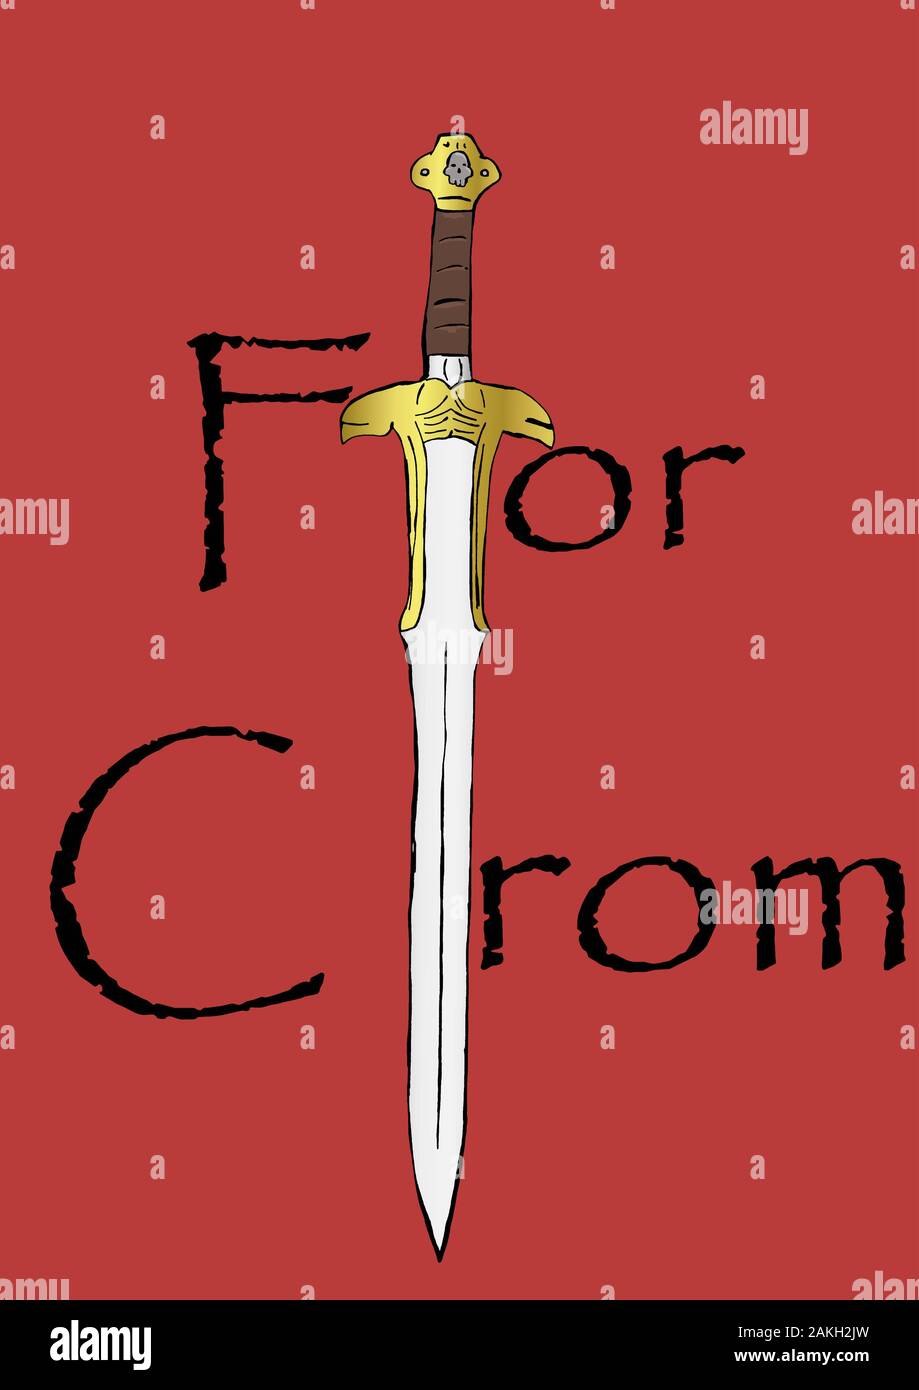 Sword of Crom Stock Photo